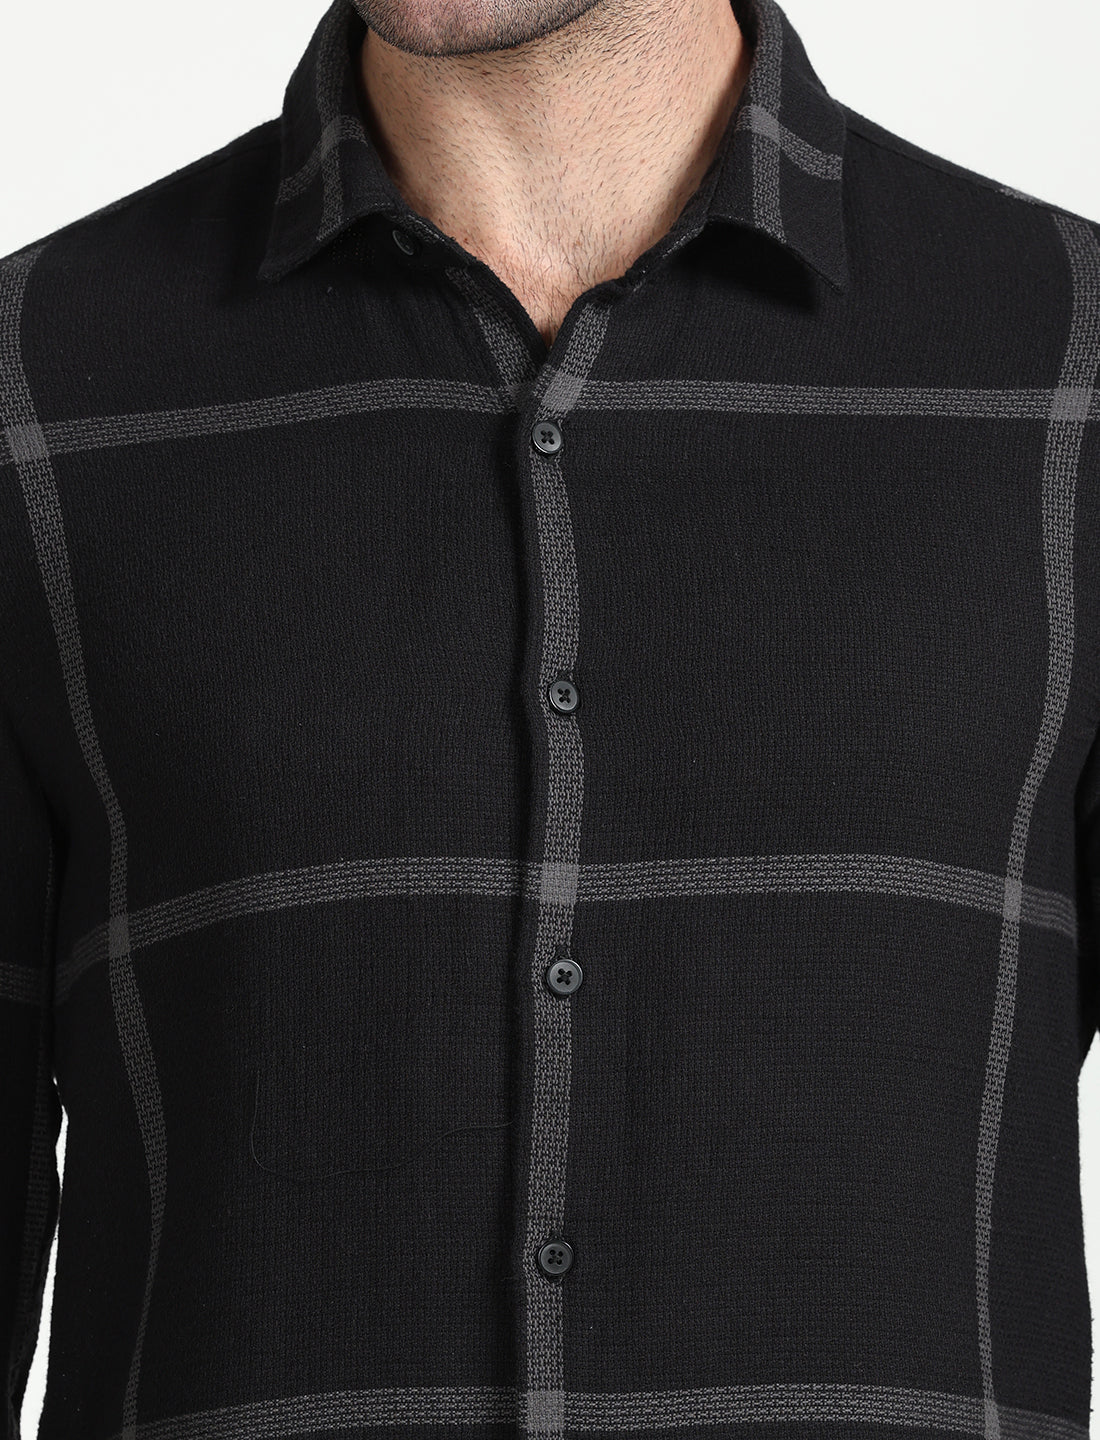 Black Checks Cotton Dobby Full Sleeve Shirt for Men 